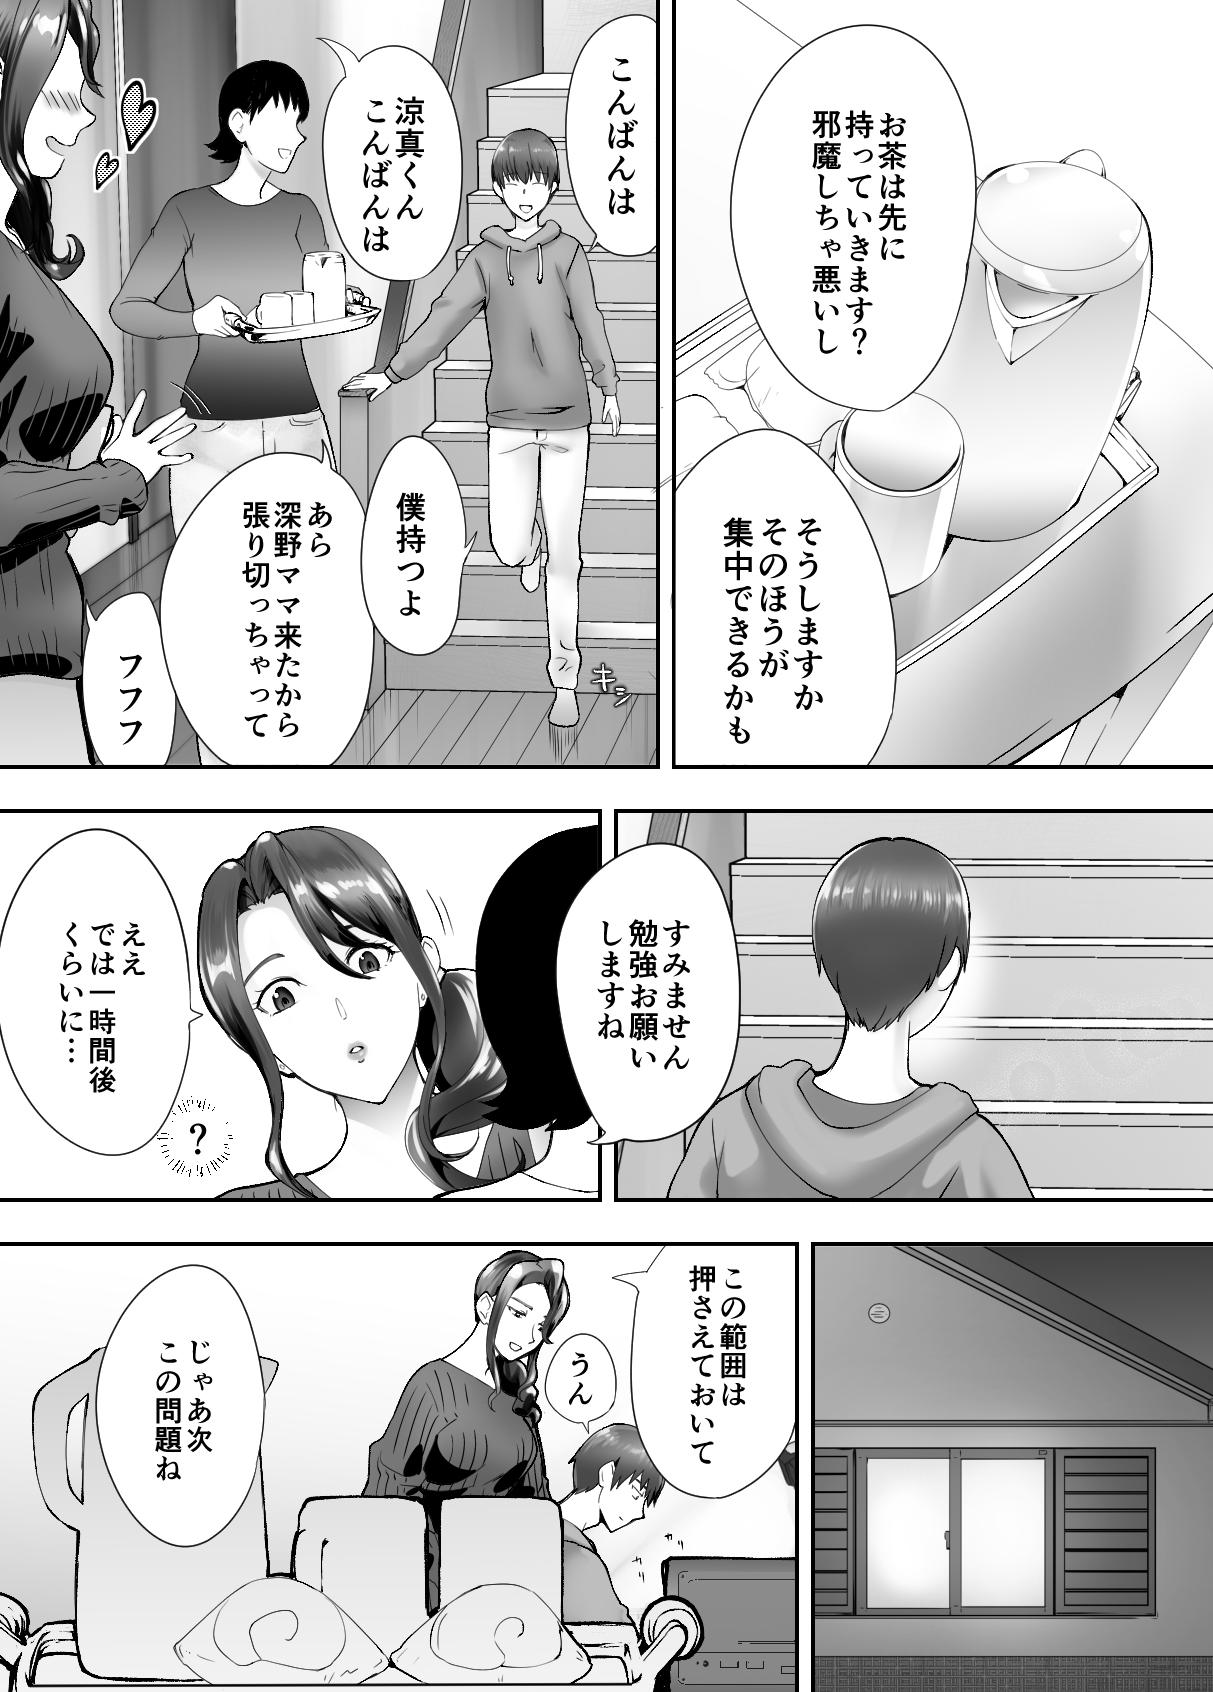 Gape Osananajimi ga Mama to Yatte Imasu. 4 - Original Clitoris - Page 3